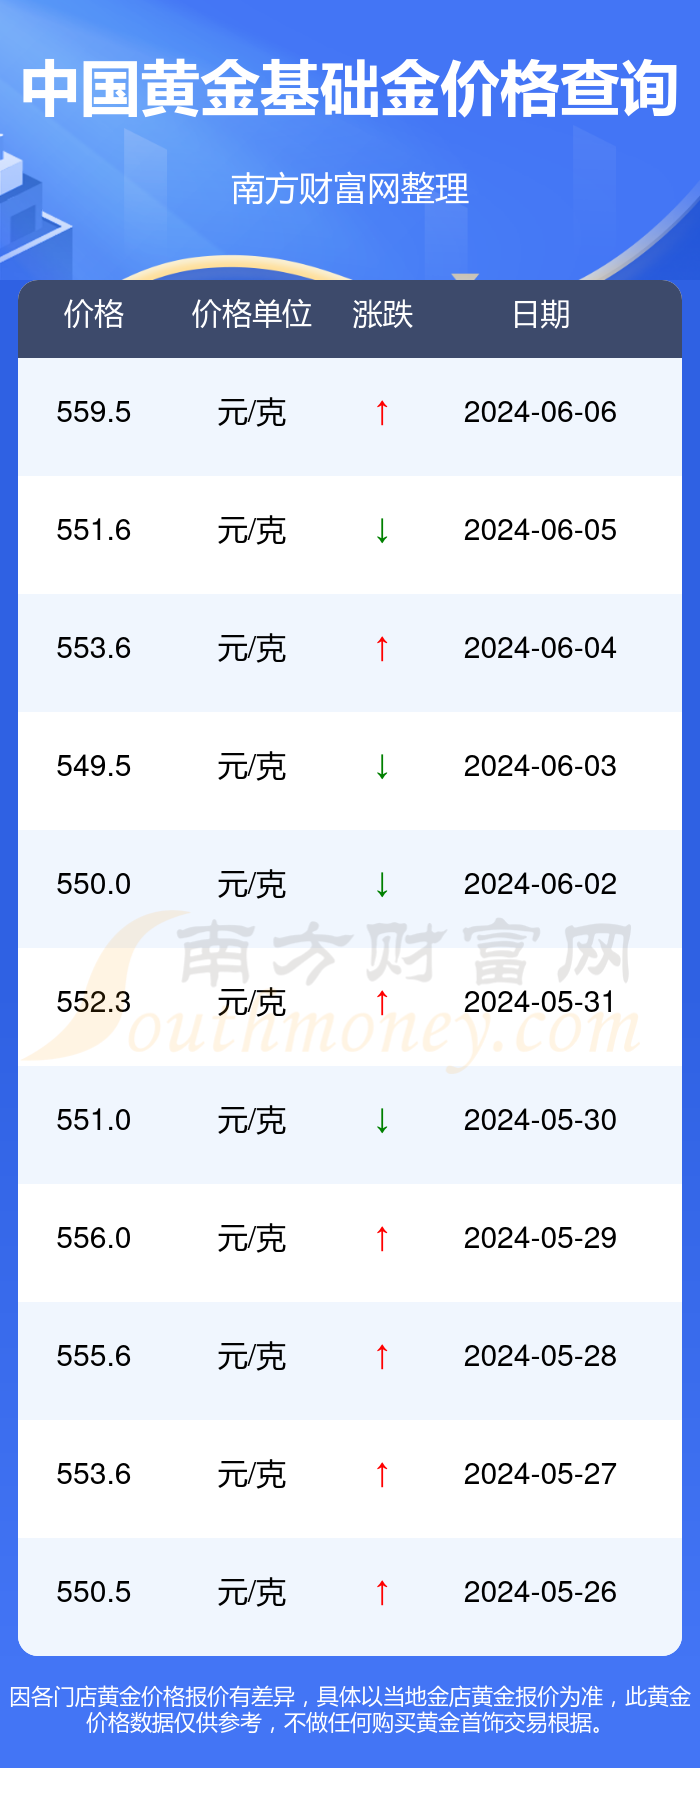 >南方财富网>理财>黄金>正文2024年6月6日中国黄金基础金价格:559